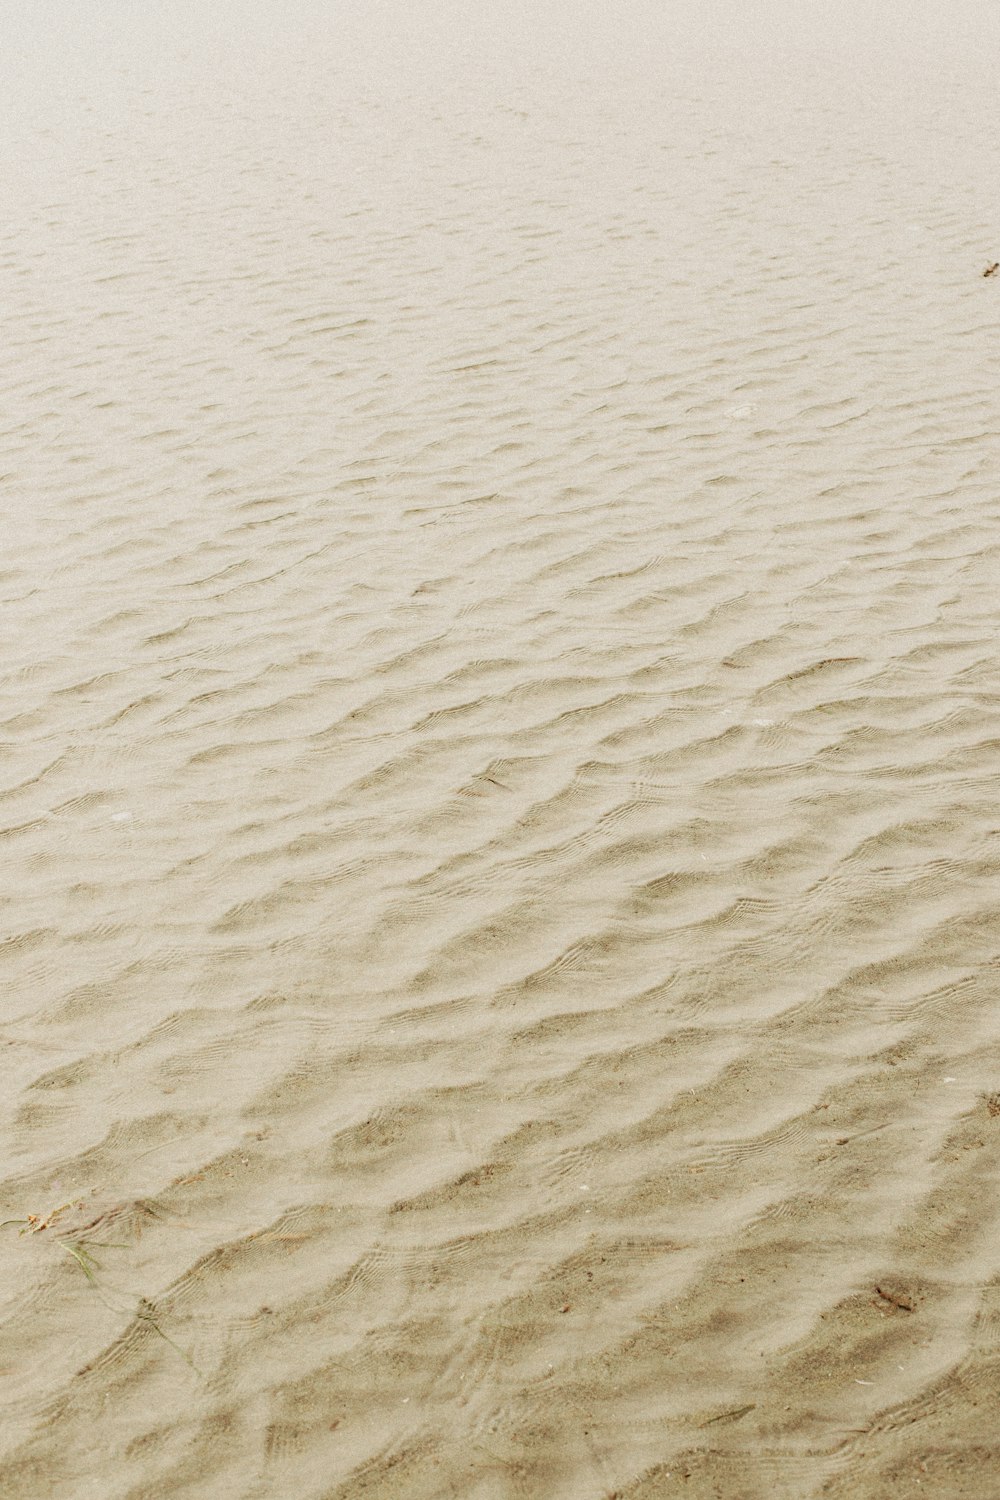 白い砂と茶色の砂